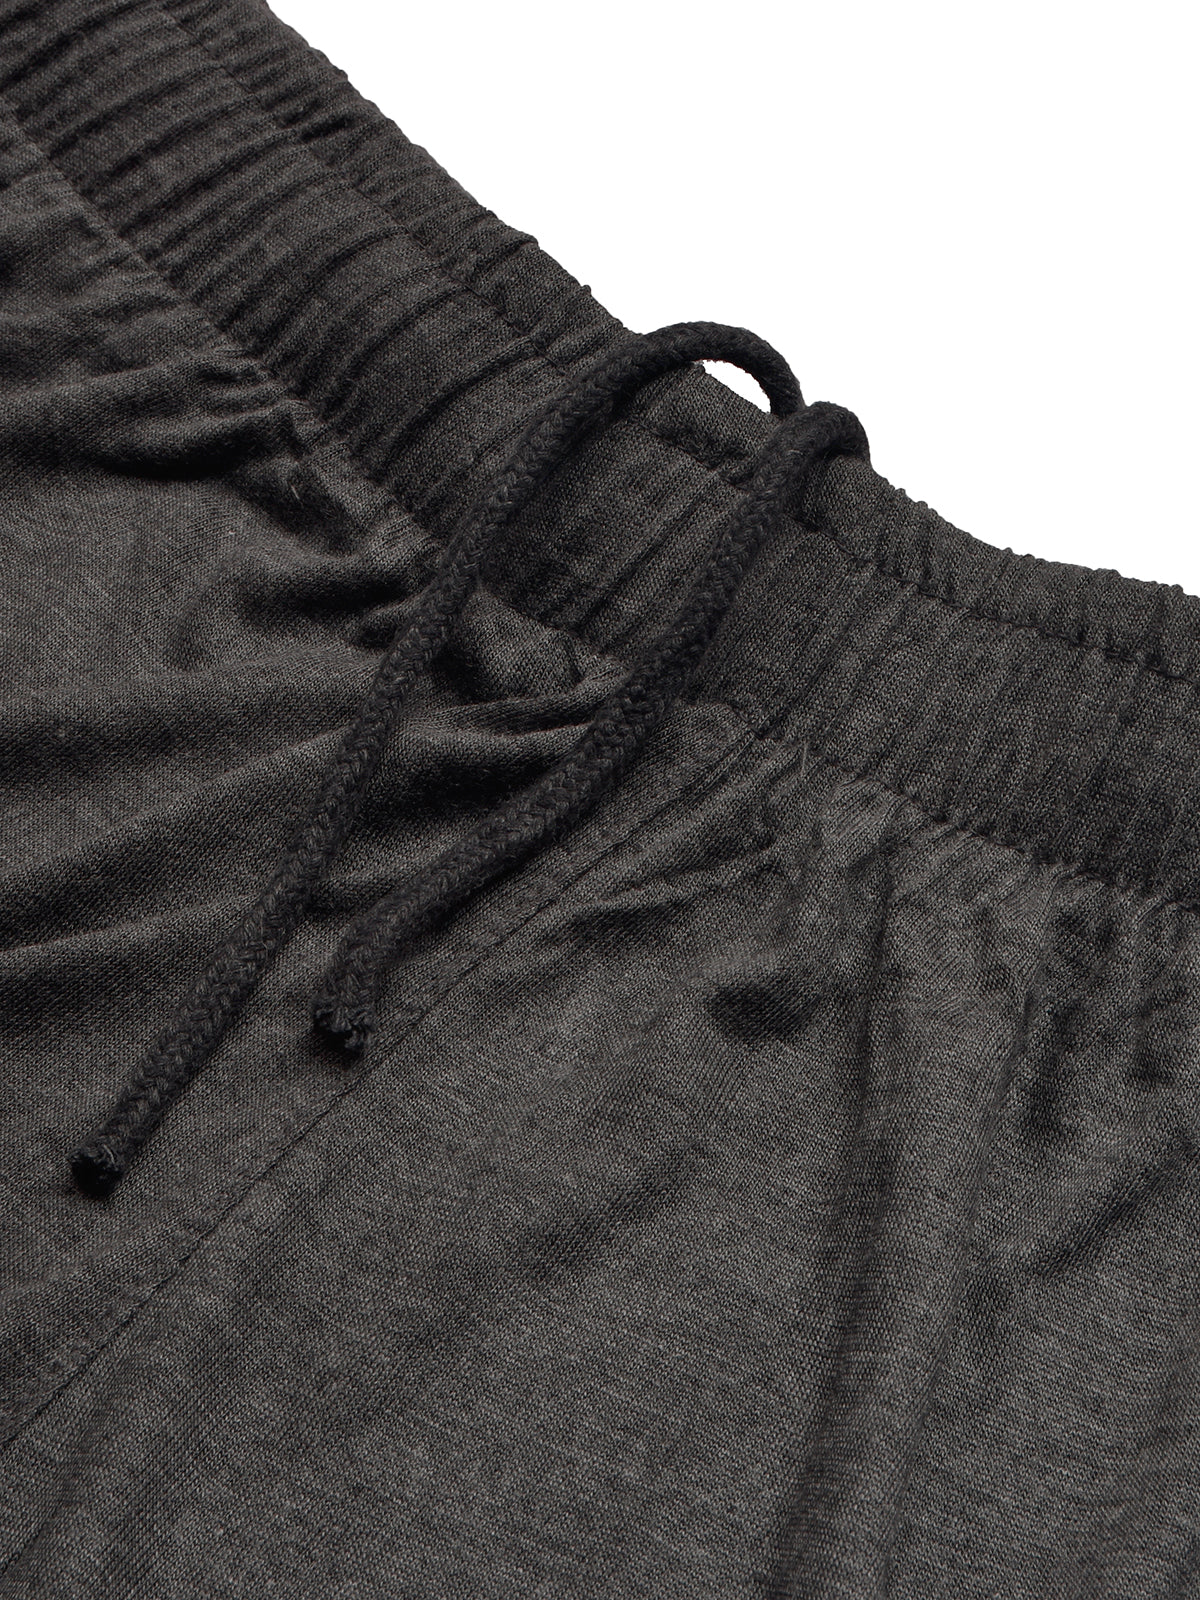 Summer Fashion T-Shirt & Lounge Short Suit For Men-Skin with Charcoal Melange-BR780